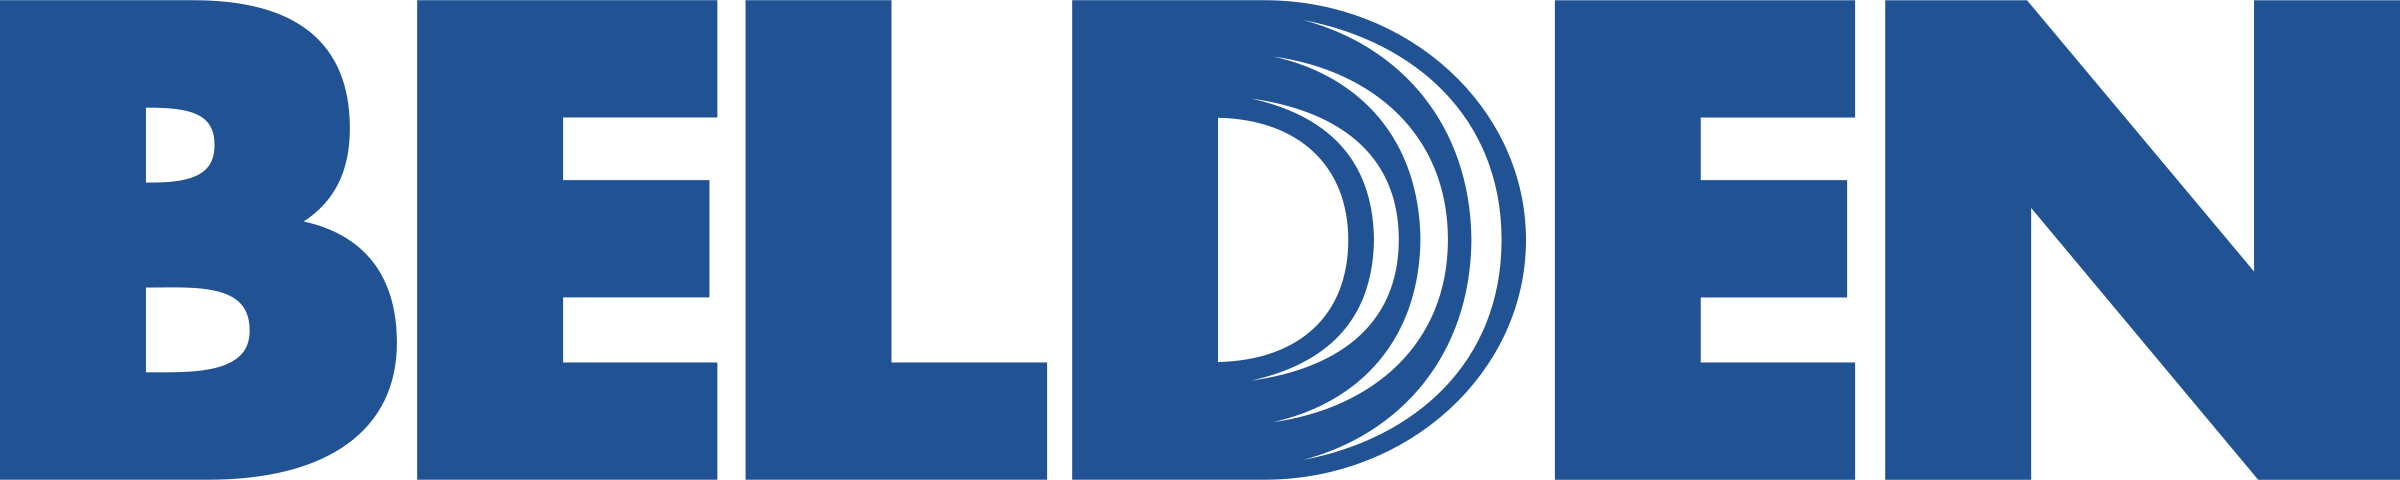 Logo de Belden